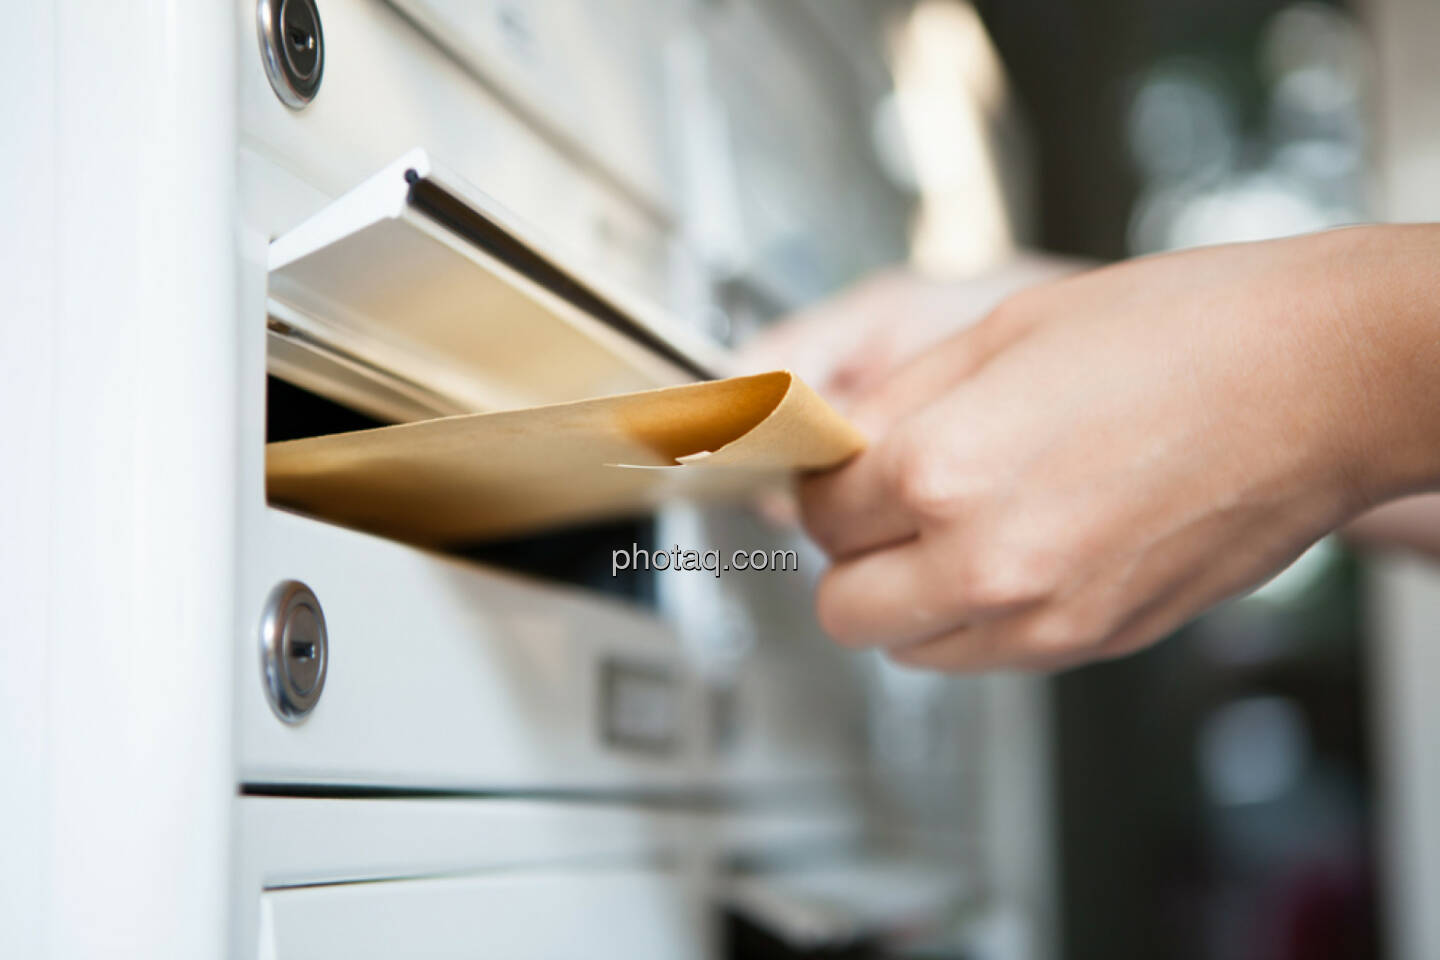 Briefkasten, Brief, aufgeben, Post, Mailbox, schreiben, http://www.shutterstock.com/de/pic-156790661/stock-photo-close-up-of-woman-s-hand-holding-envelope-and-inserting-in-mailbox.html